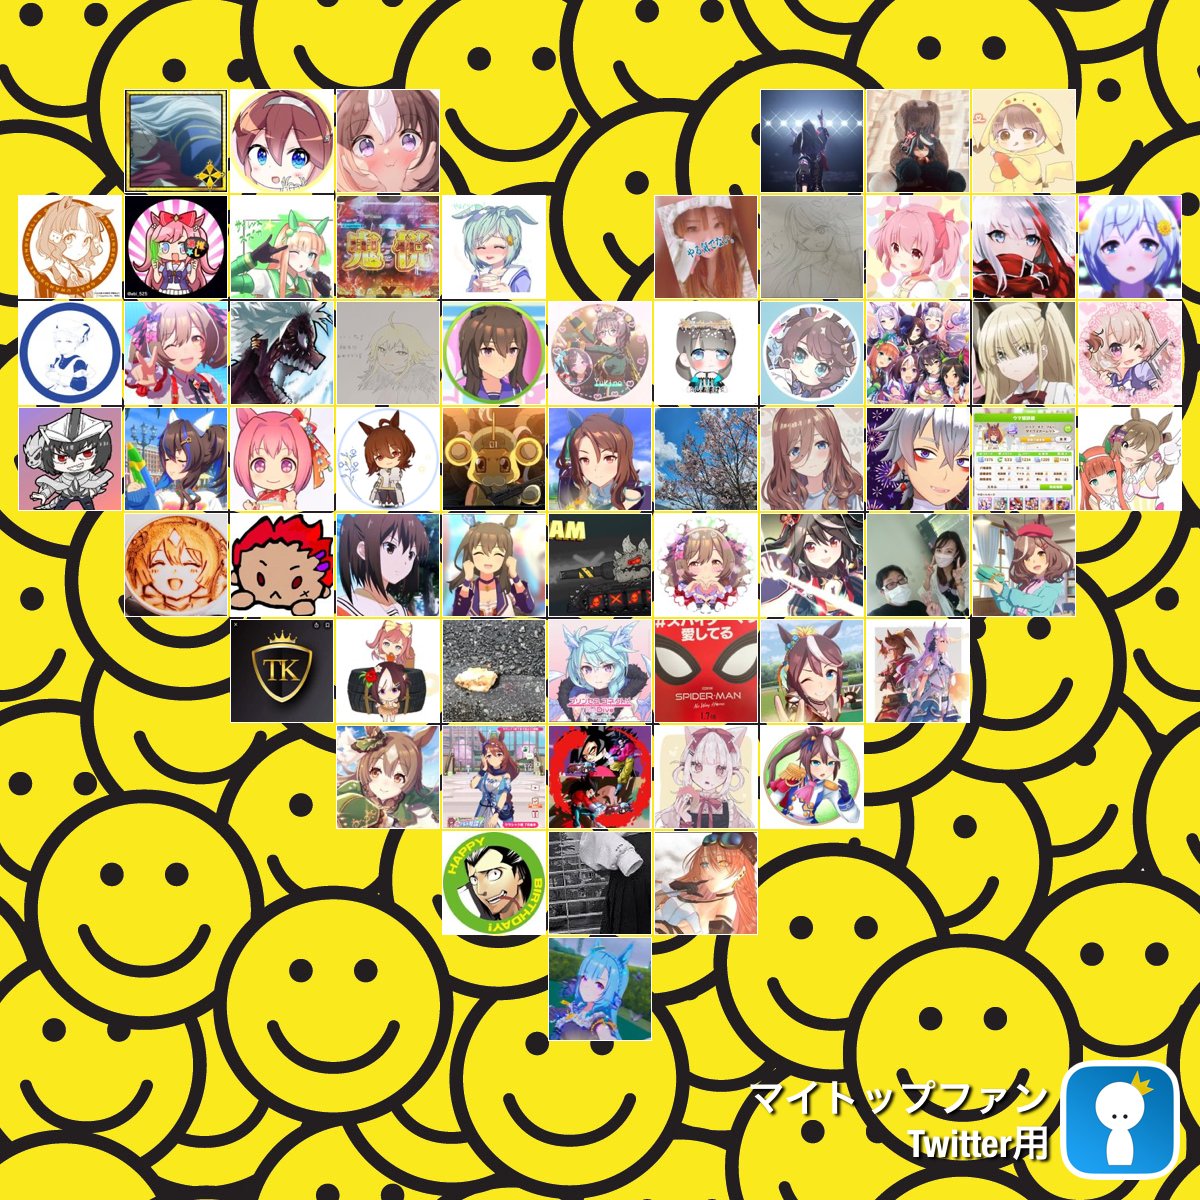 凄いマイトップファン #mytopfollowers #EmojiDay dixapp.com/mytopfollowers… から 自分を見つけたらリツイートしましょう